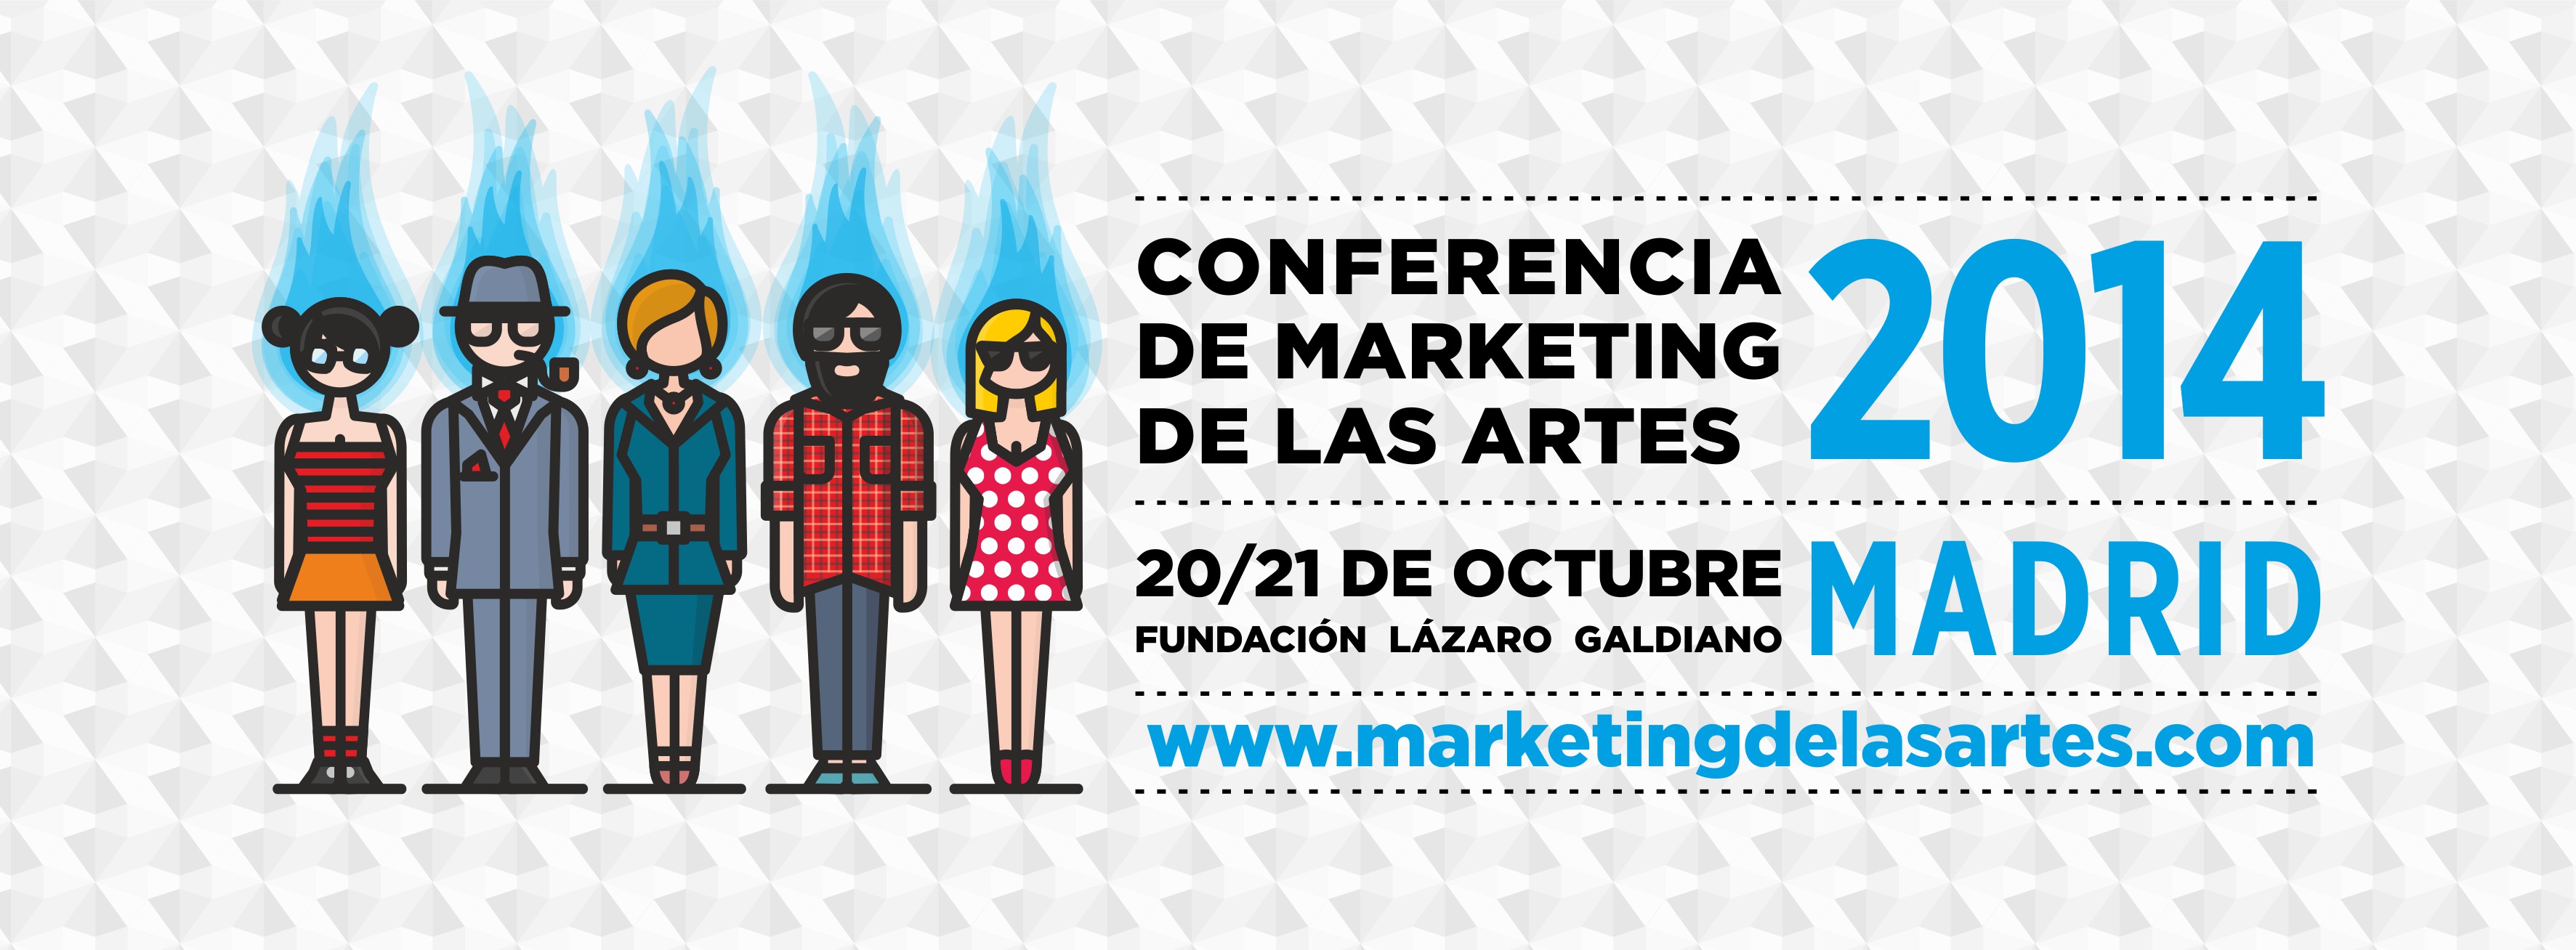 Marketing de Las Artes 2014